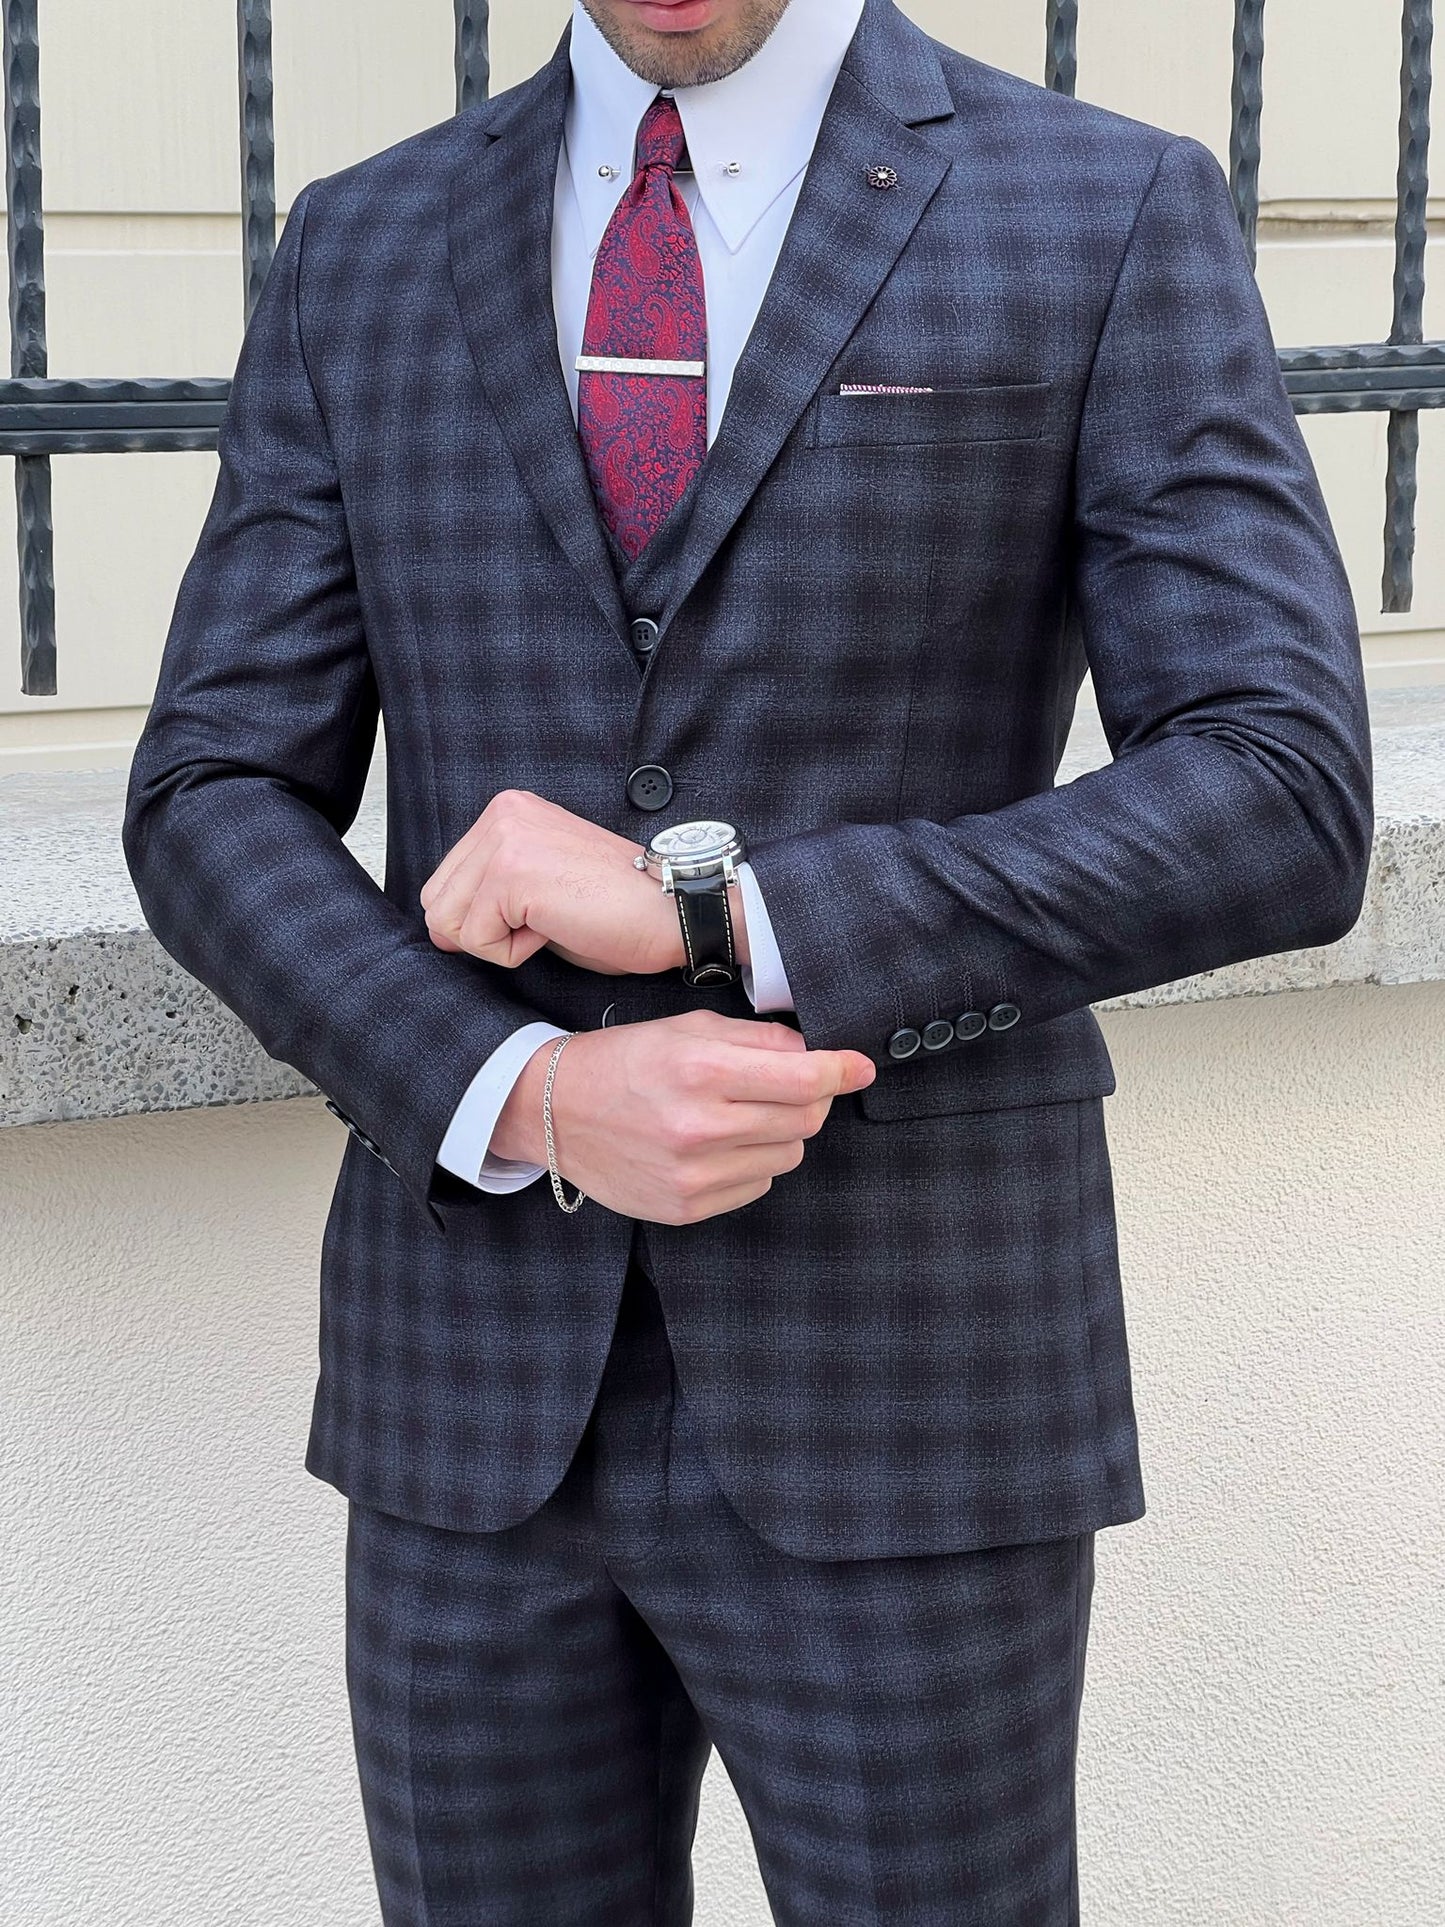 Levi Plaid Slim Fit Business Suit (Black & Navy Blue)